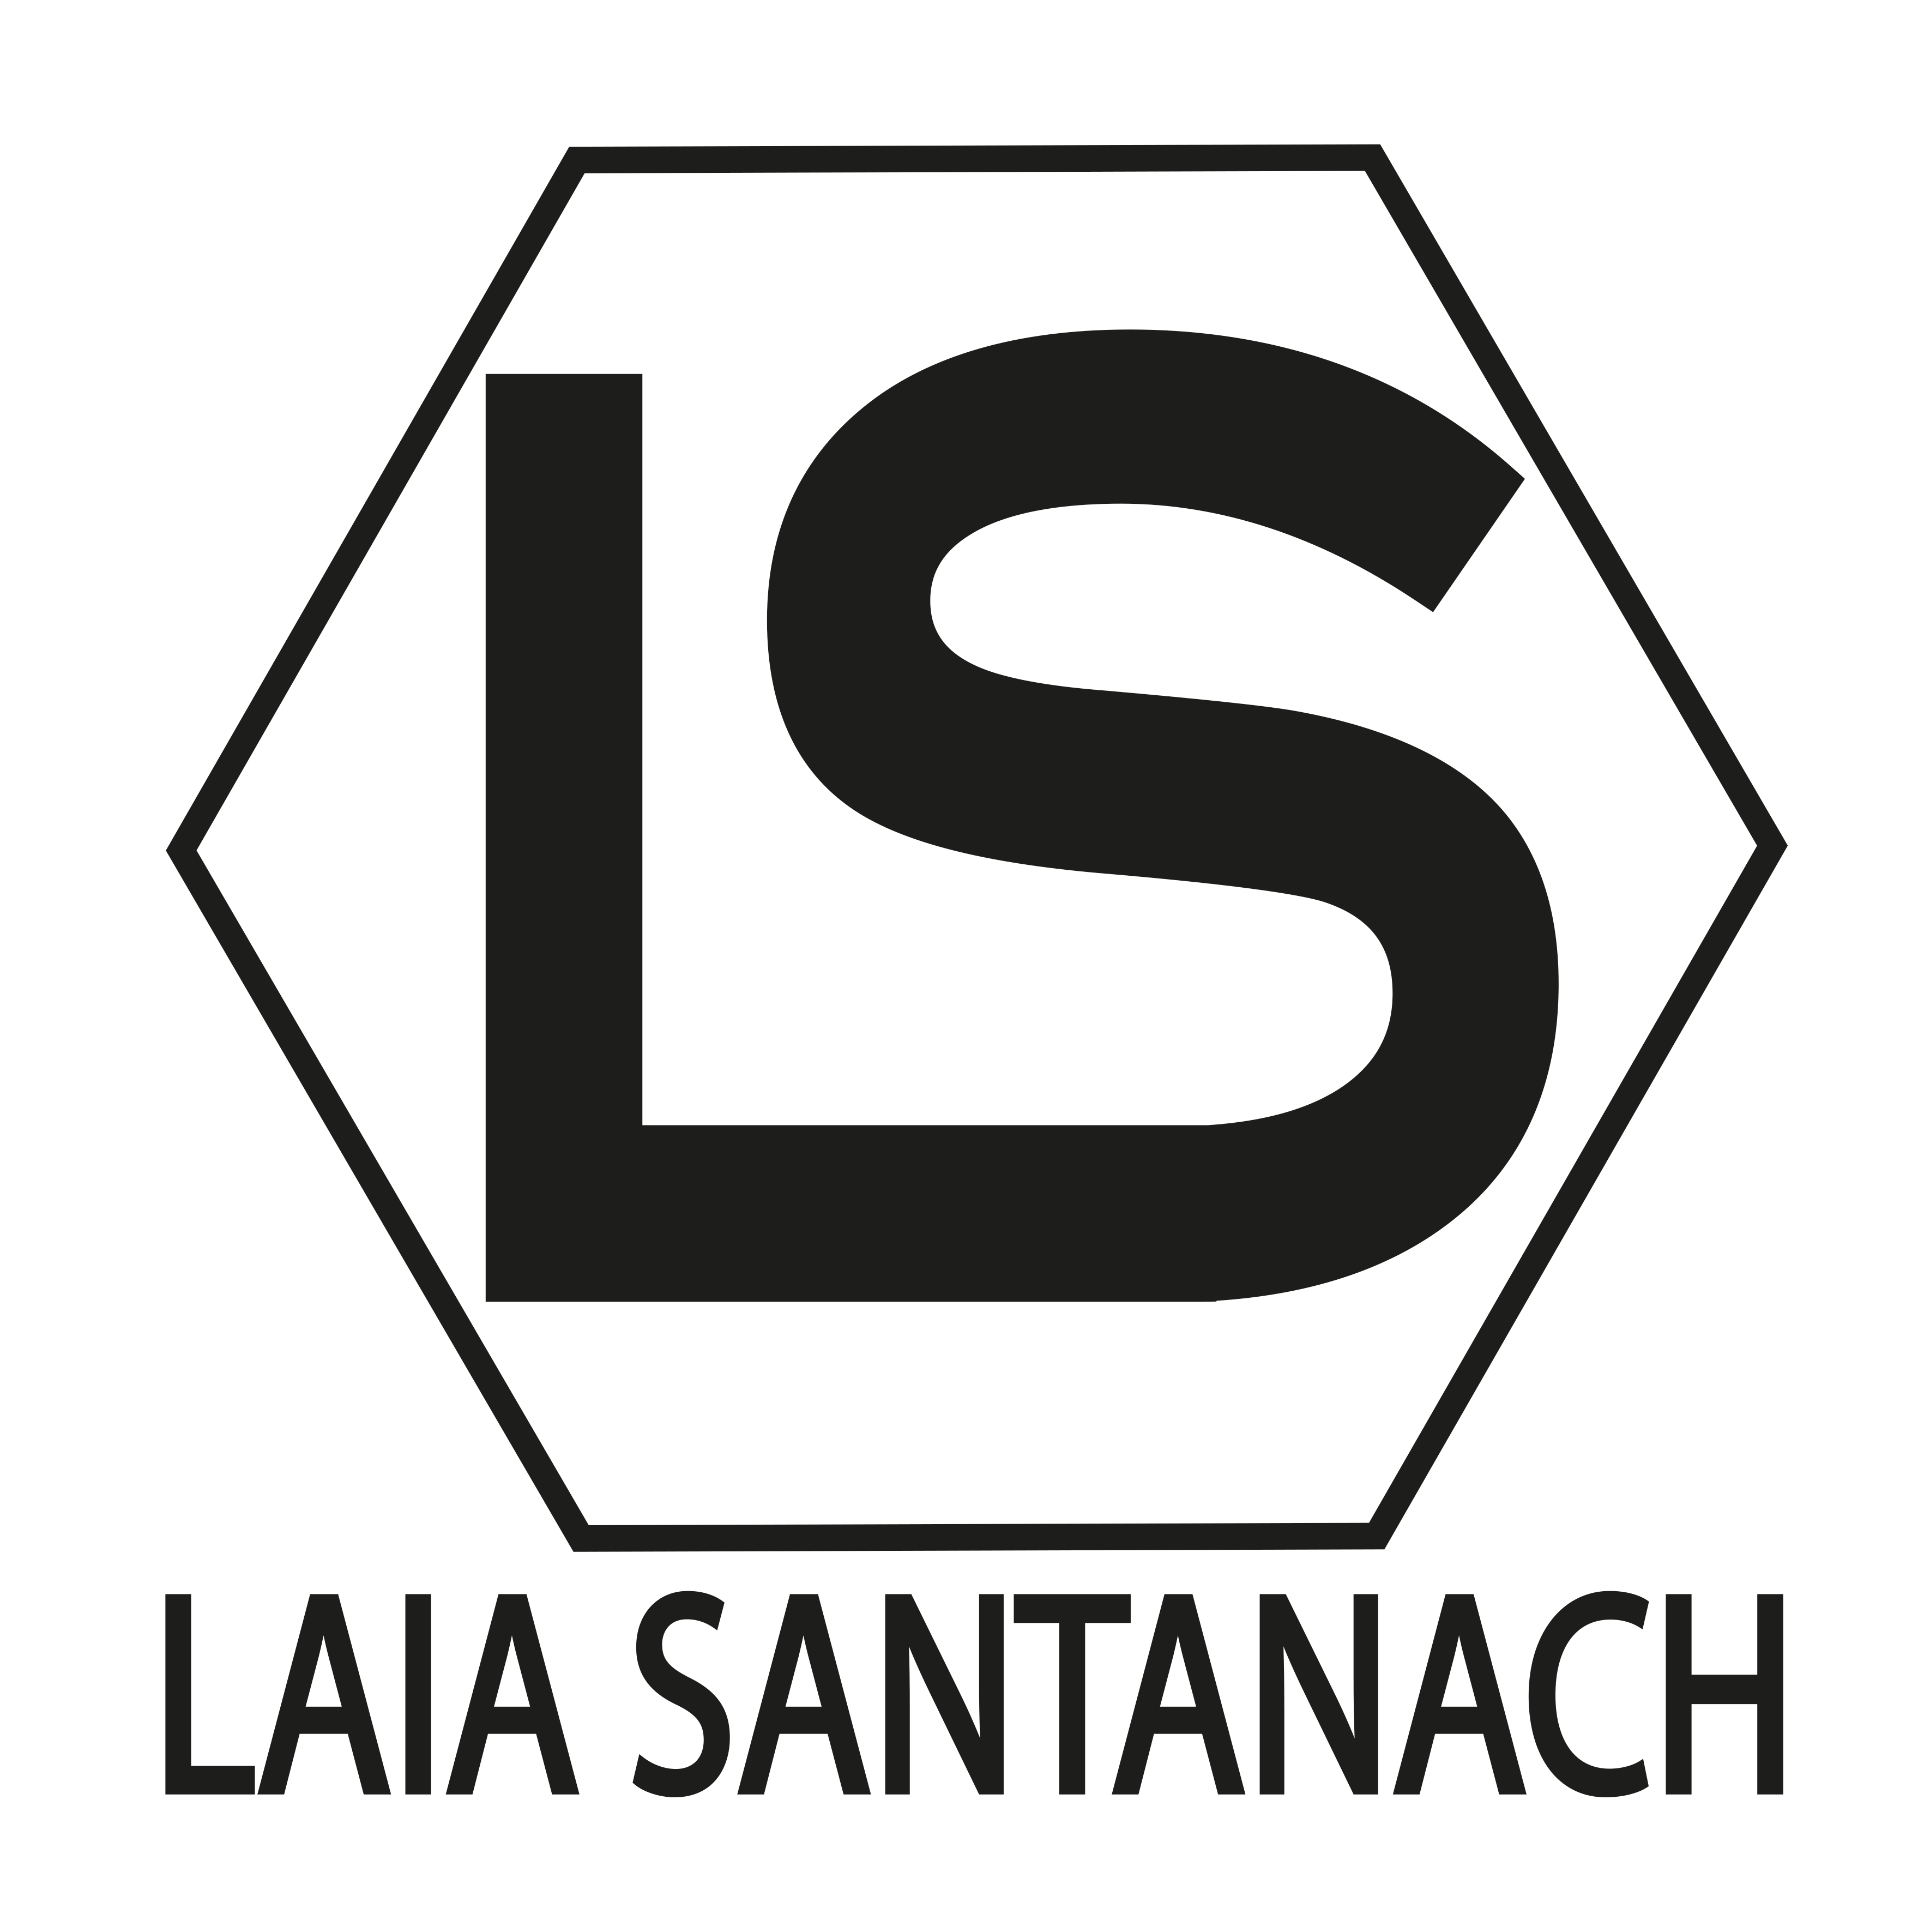 Laia Santanach